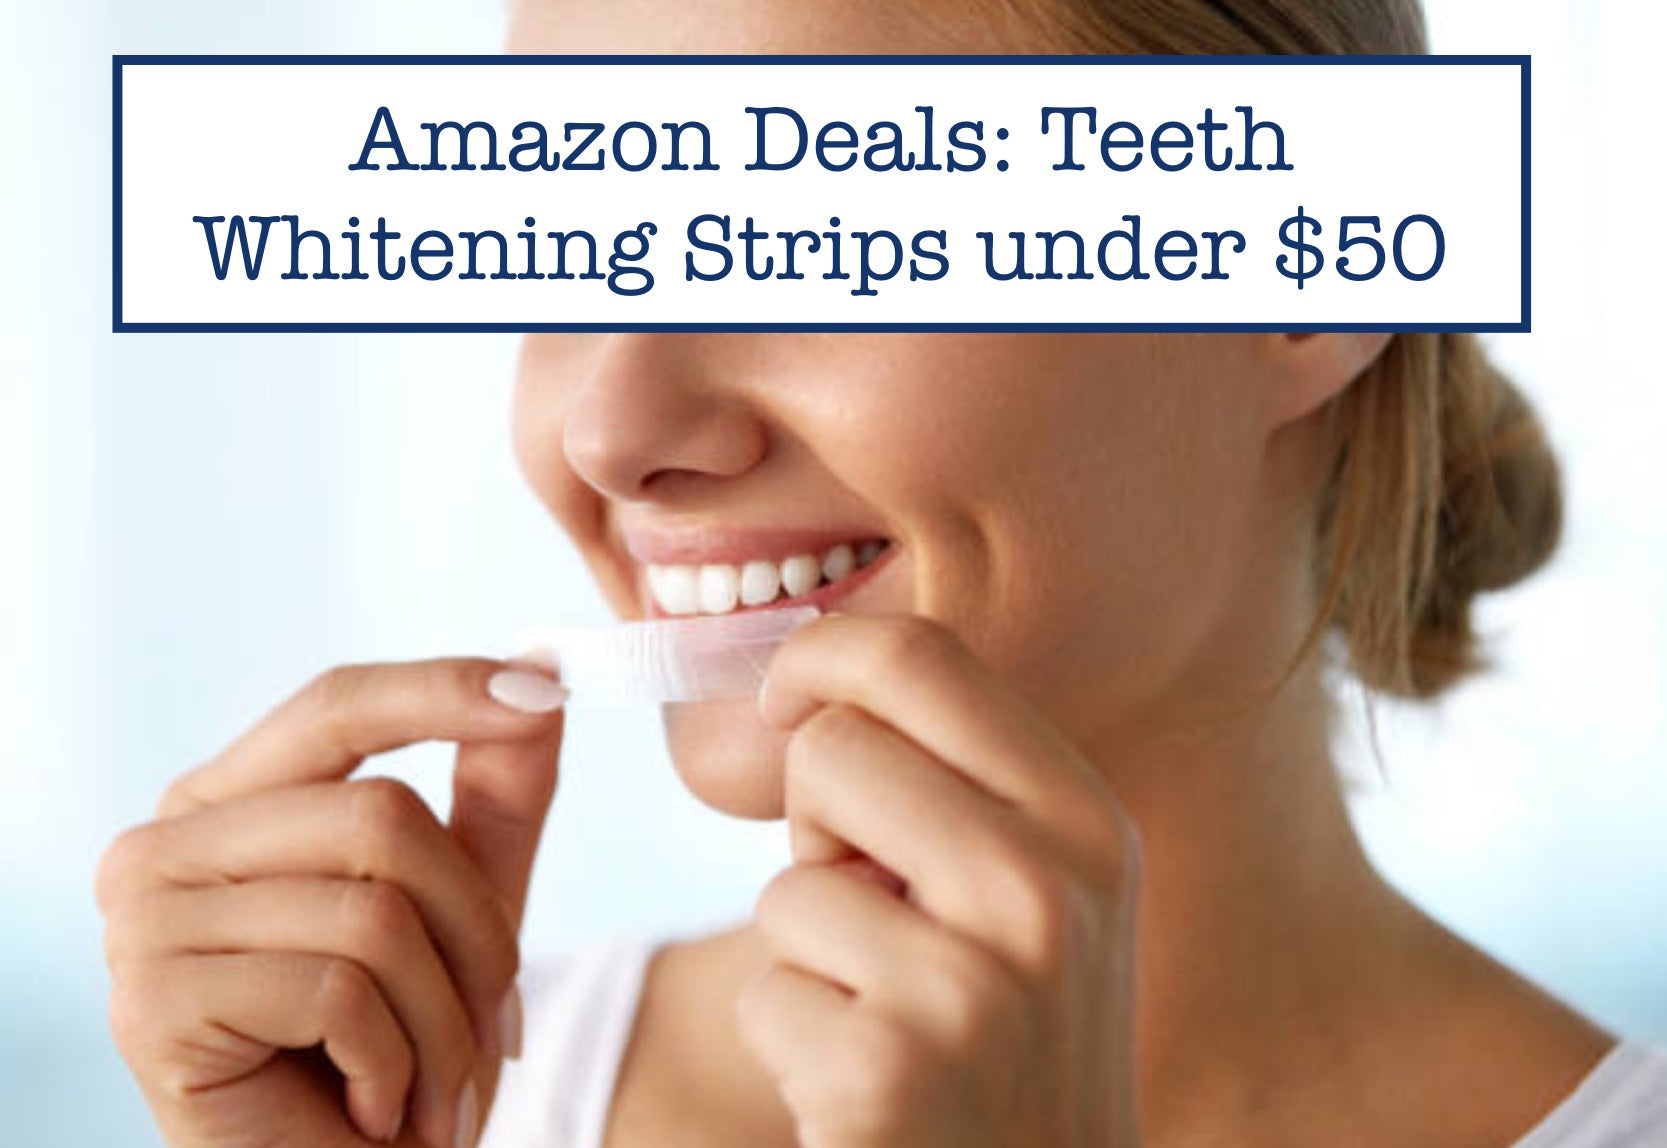 Amazon Deals: Teeth Whitening Strips under $50